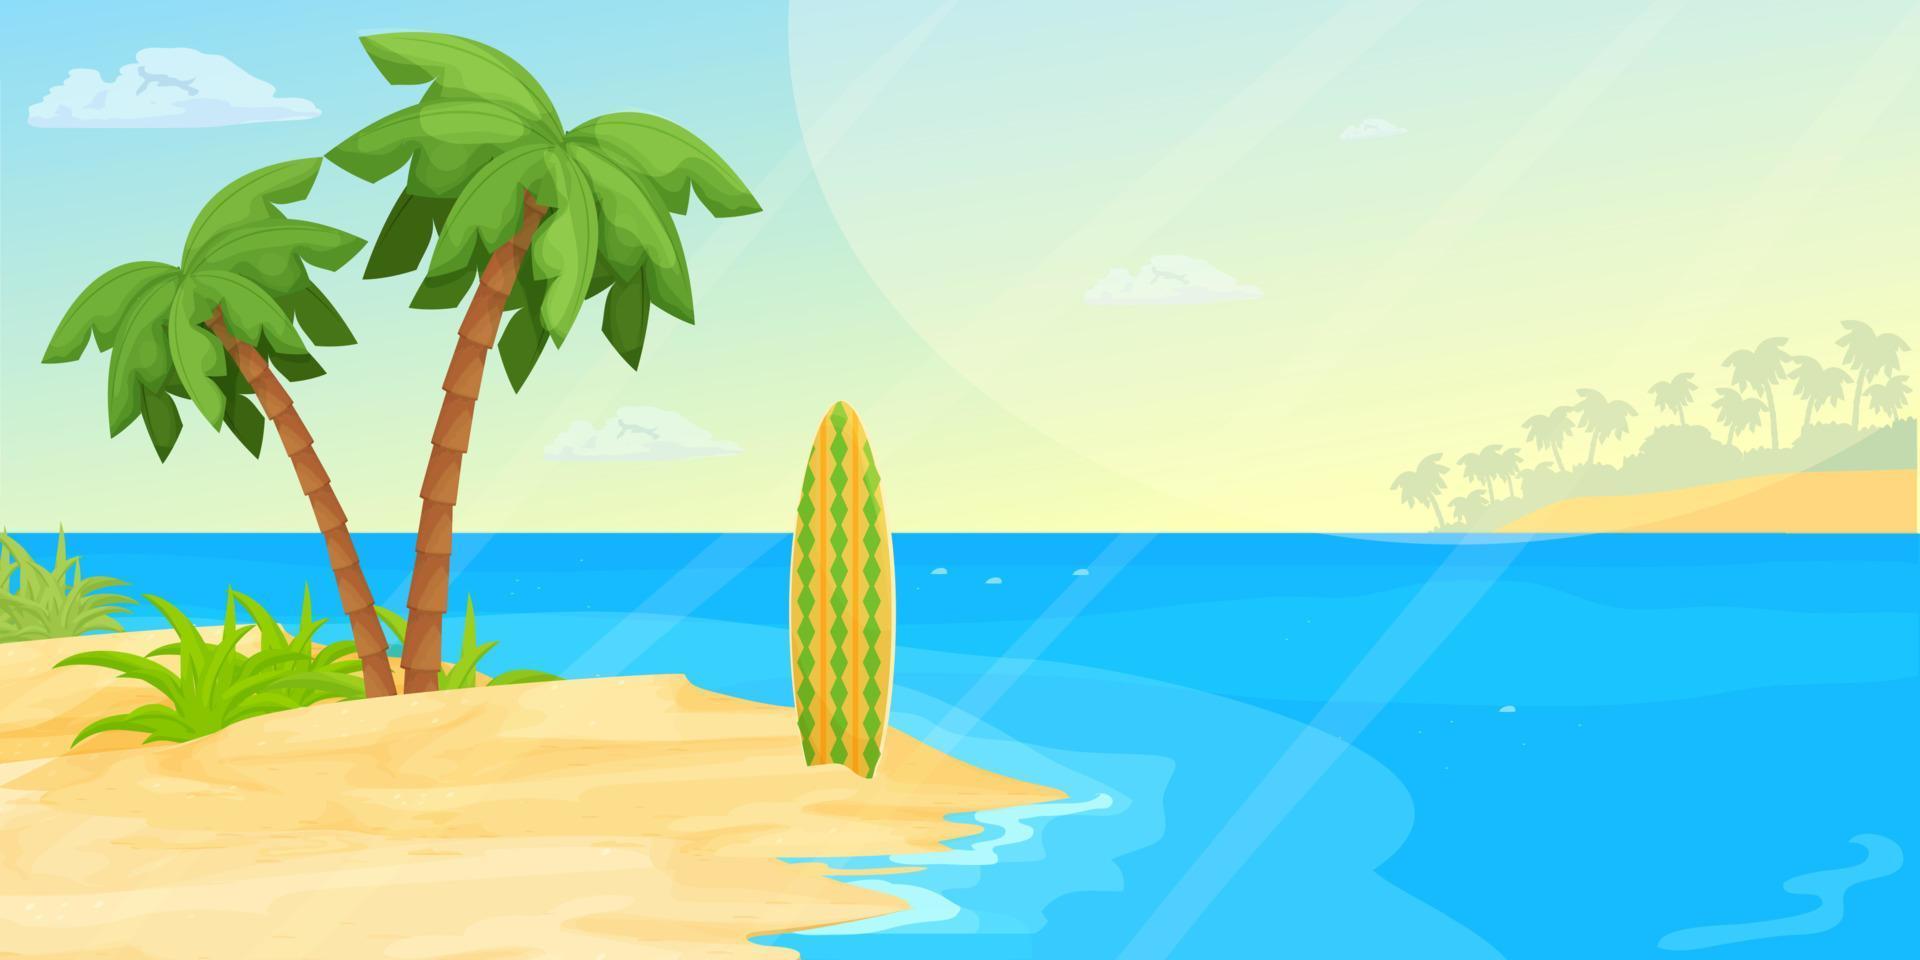 tropisch zeegezicht strand met zee, zand, palmbomen en surfplank in cartoon-stijl. horizontale banner, zomervakantie exotische kust. rustige, ontspannende scène. vector illustratie